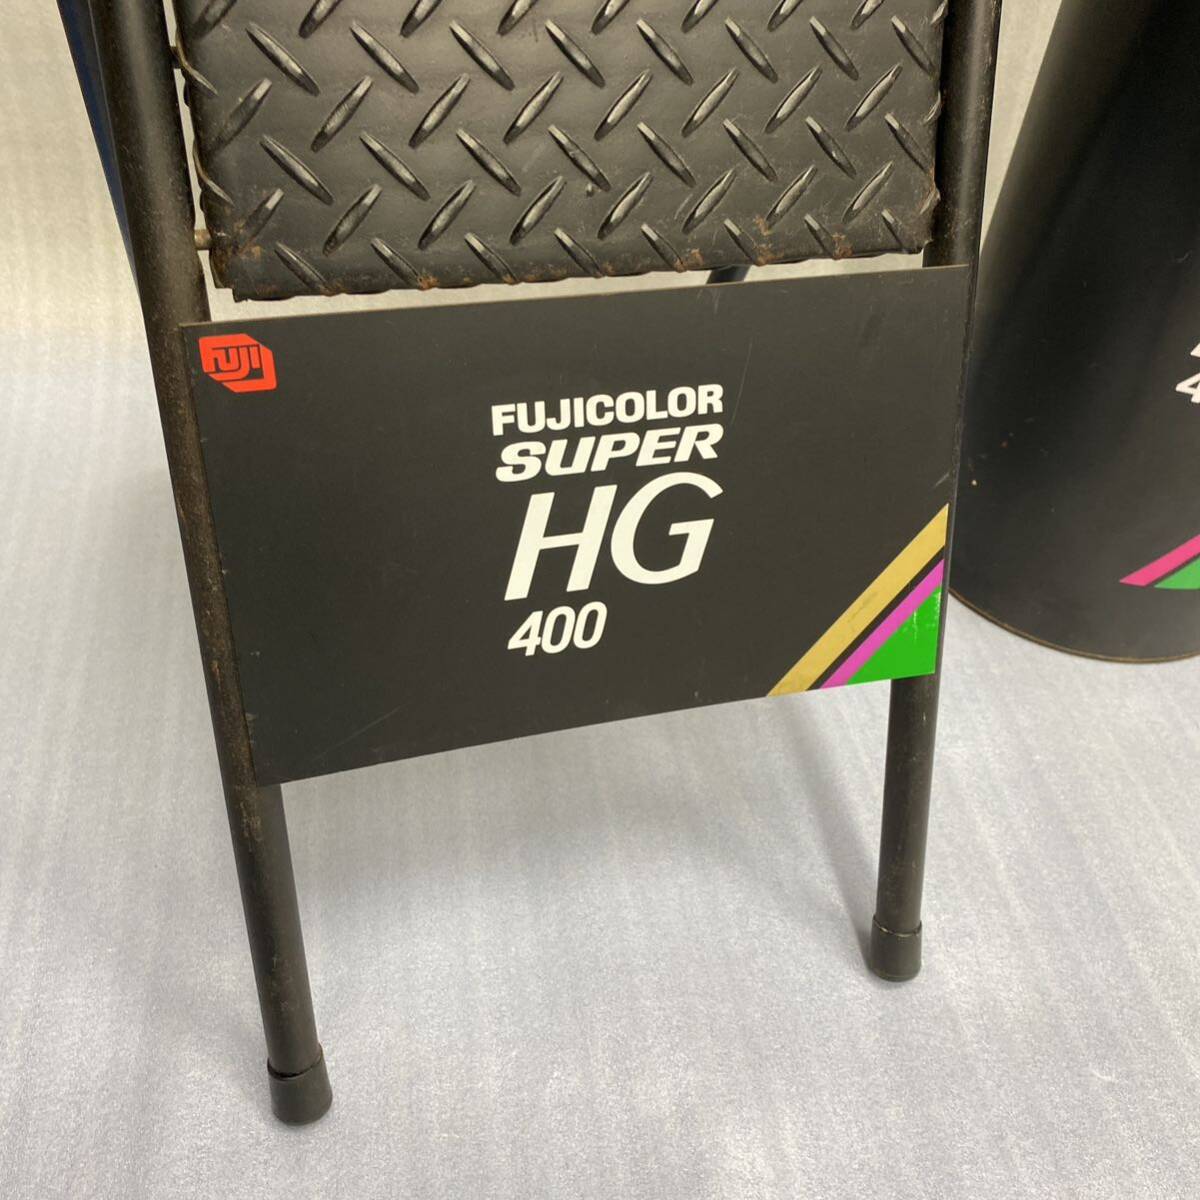  подлинная вещь *FUJICOLOR SUPER HG 400 стремянка стремянка мусорка 2 пункт совместно комплект Fuji цвет произведение искусства реклама .. металлический 